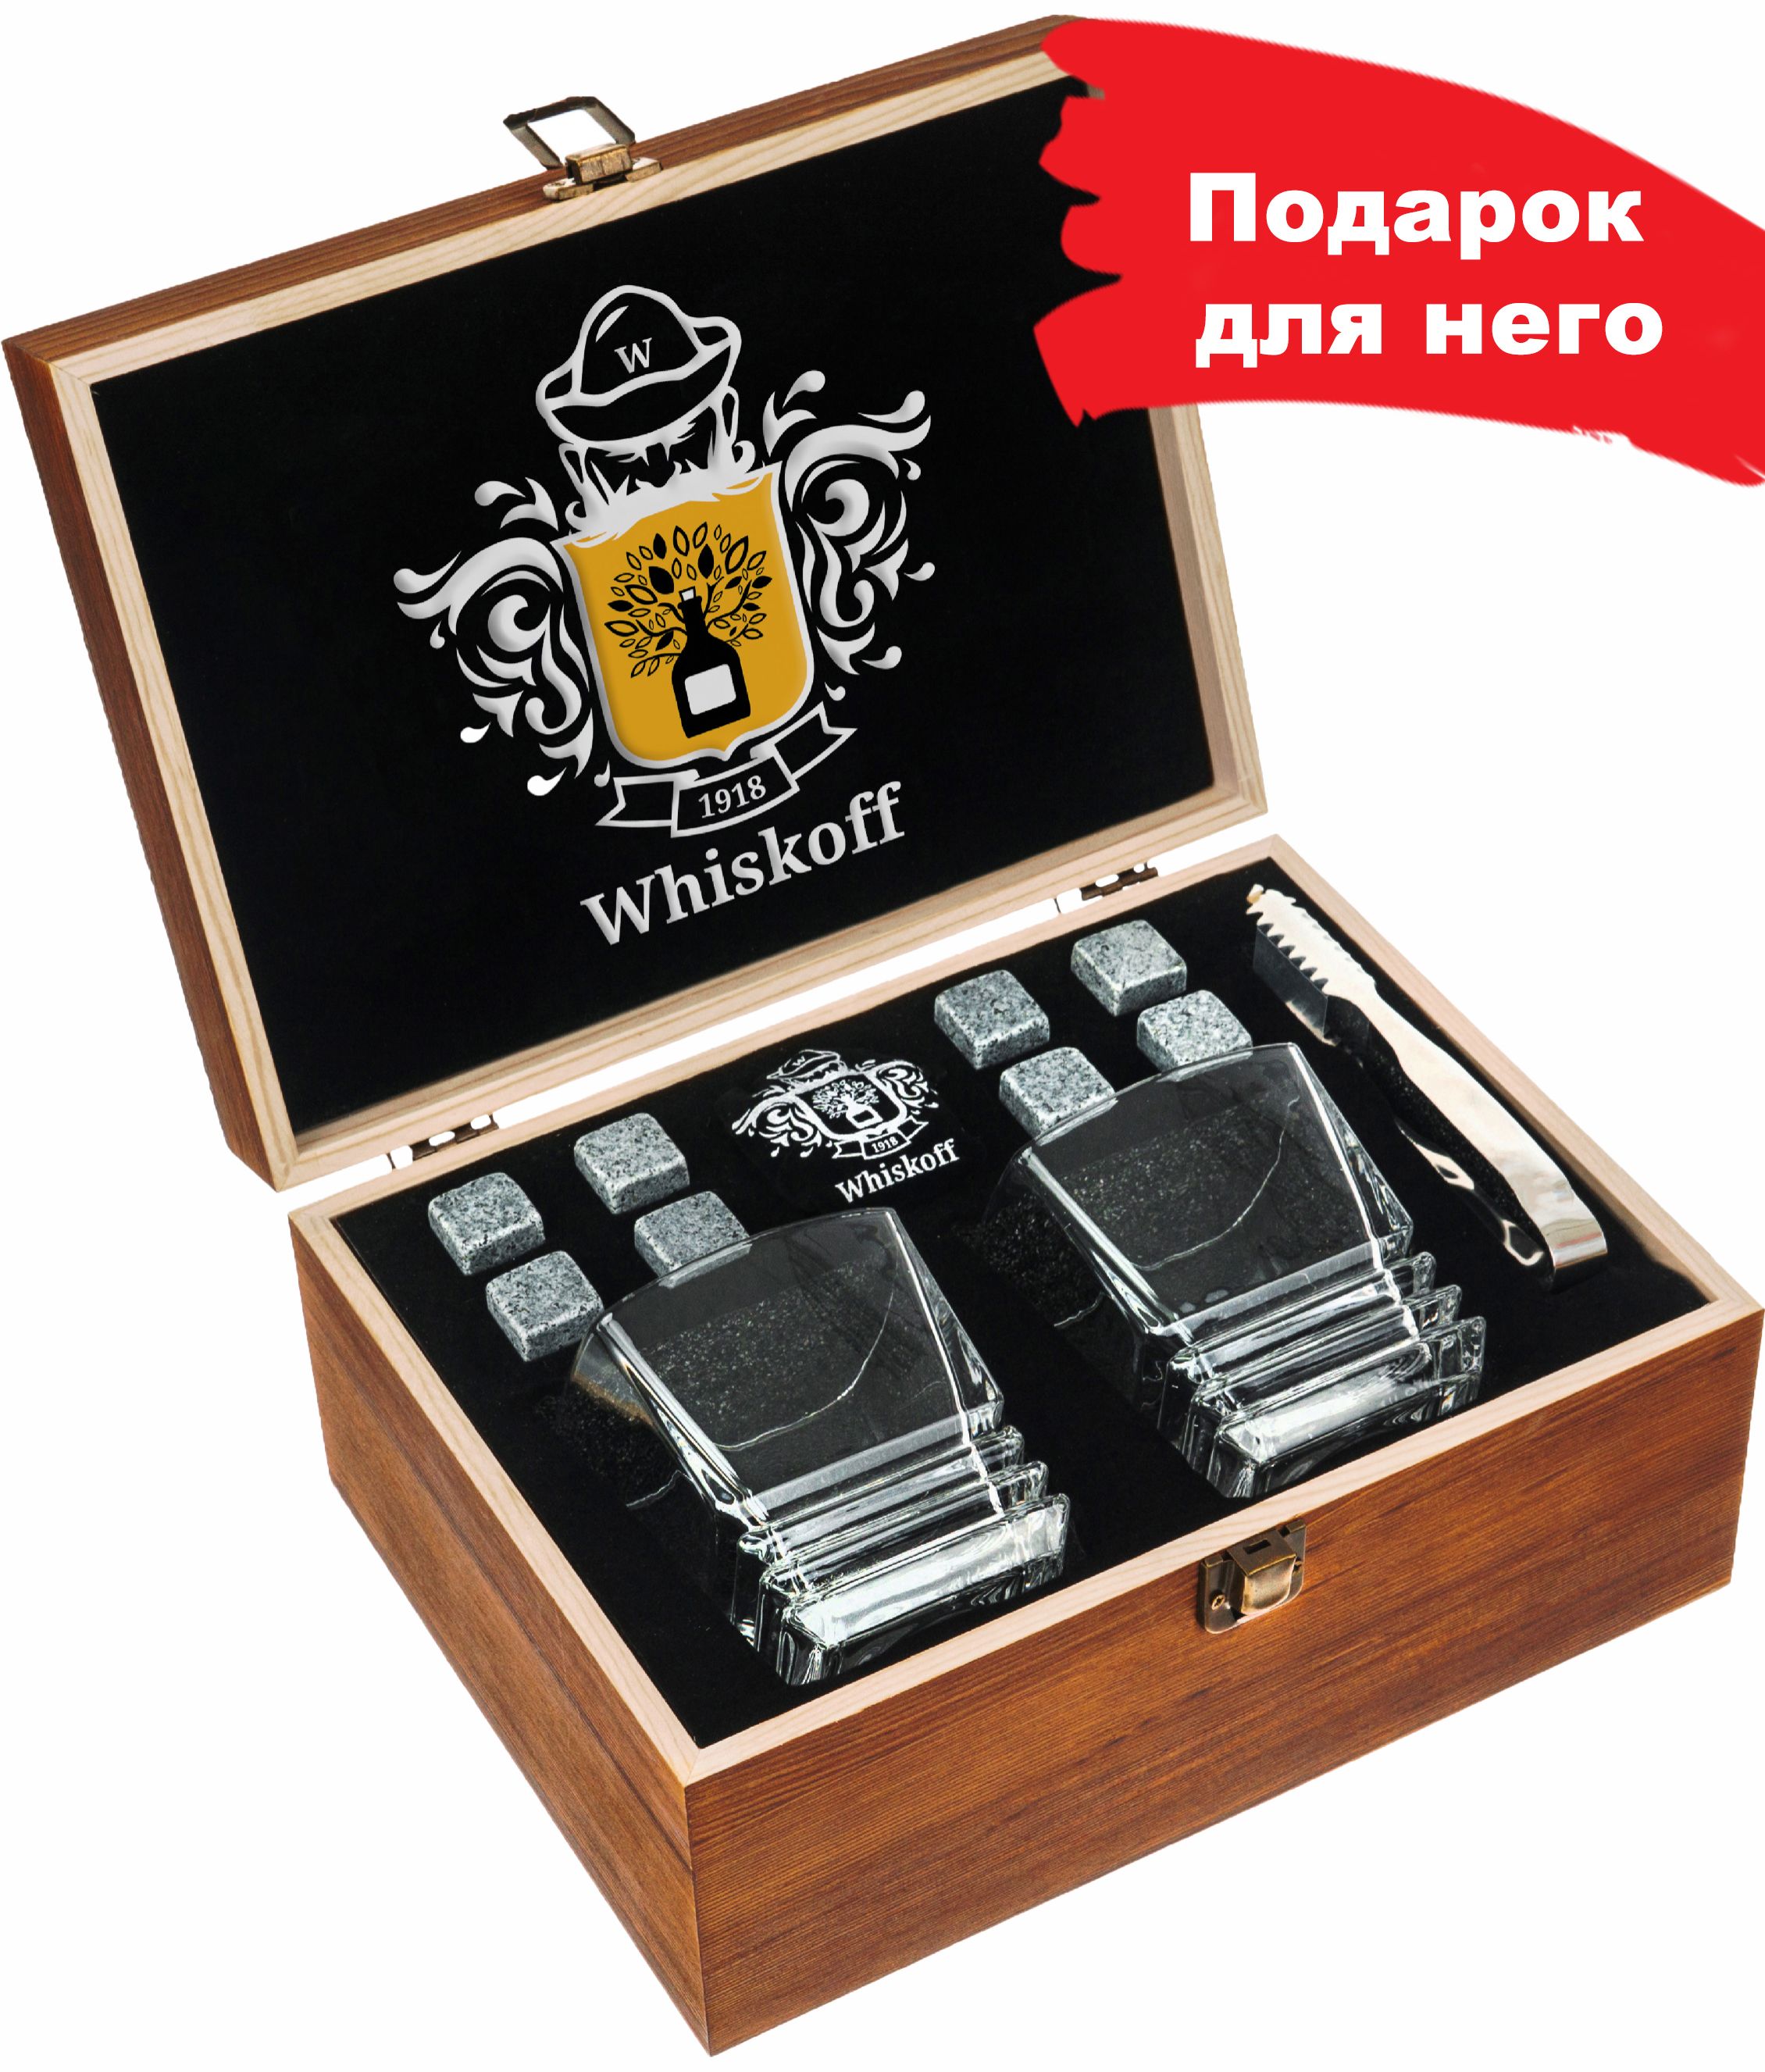 Набор для виски с камнями. Whiskoff наборы для виски. Vah ter ame подарочный набор для мужчин из 4 бокалов для виски. Подарочный набор для виски Whiskoff. Whiskoff / подарочный набор бокалов.